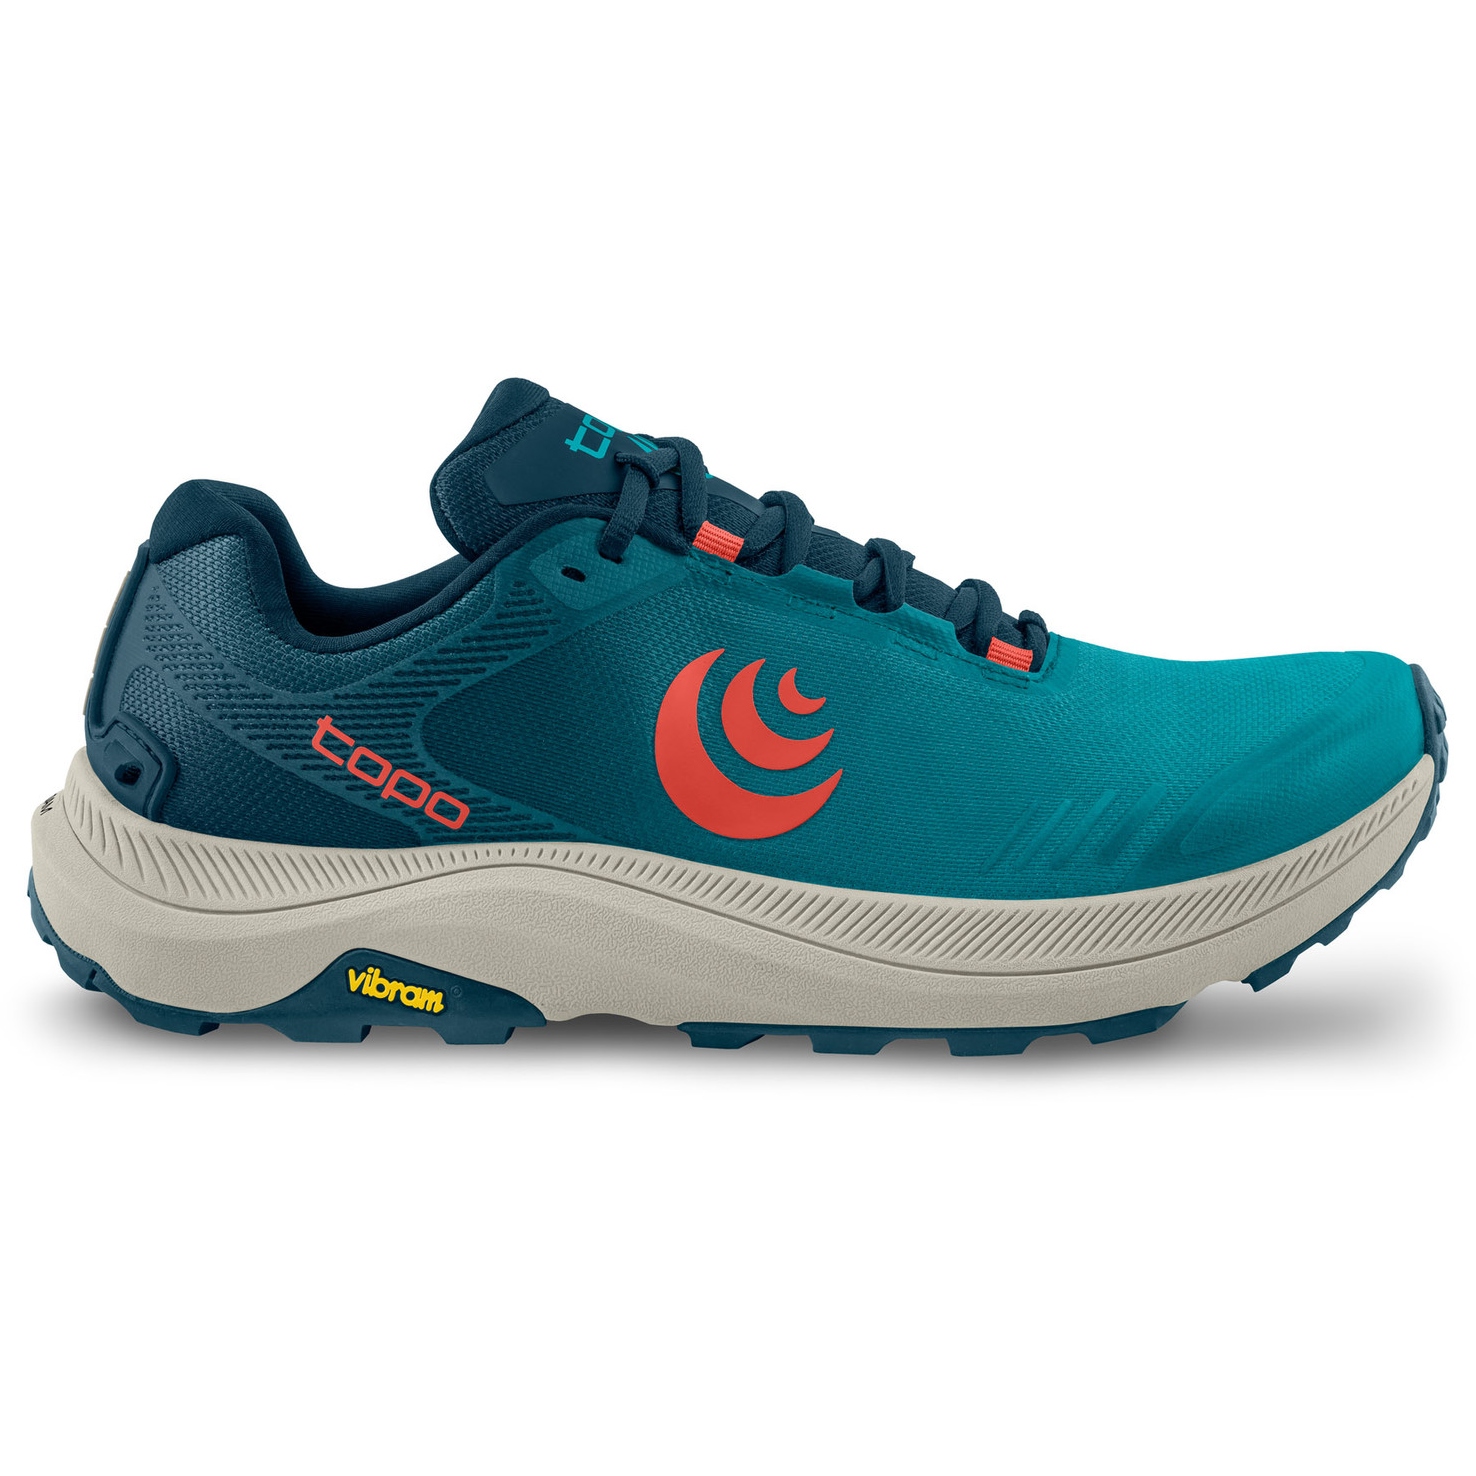 Productfoto van Topo Athletic MT-5 Trail Hardloopschoenen Herren - blauw/rood